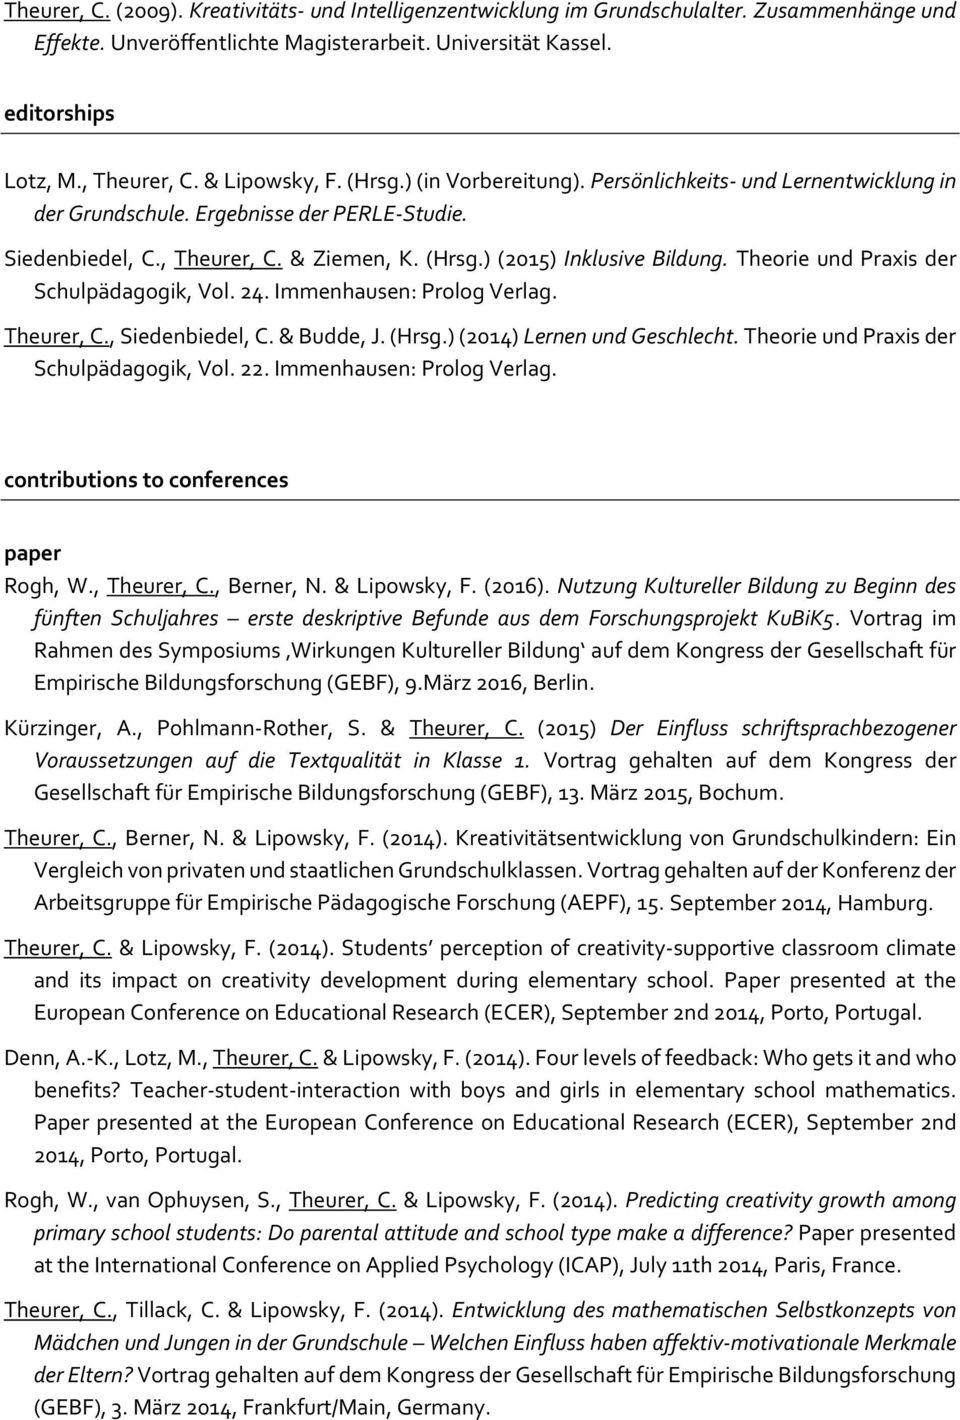 Theorie und Praxis der Schulpädagogik, Vol. 24. Immenhausen: Prolog Verlag. Theurer, C., Siedenbiedel, C. & Budde, J. (Hrsg.) (2014) Lernen und Geschlecht. Theorie und Praxis der Schulpädagogik, Vol.